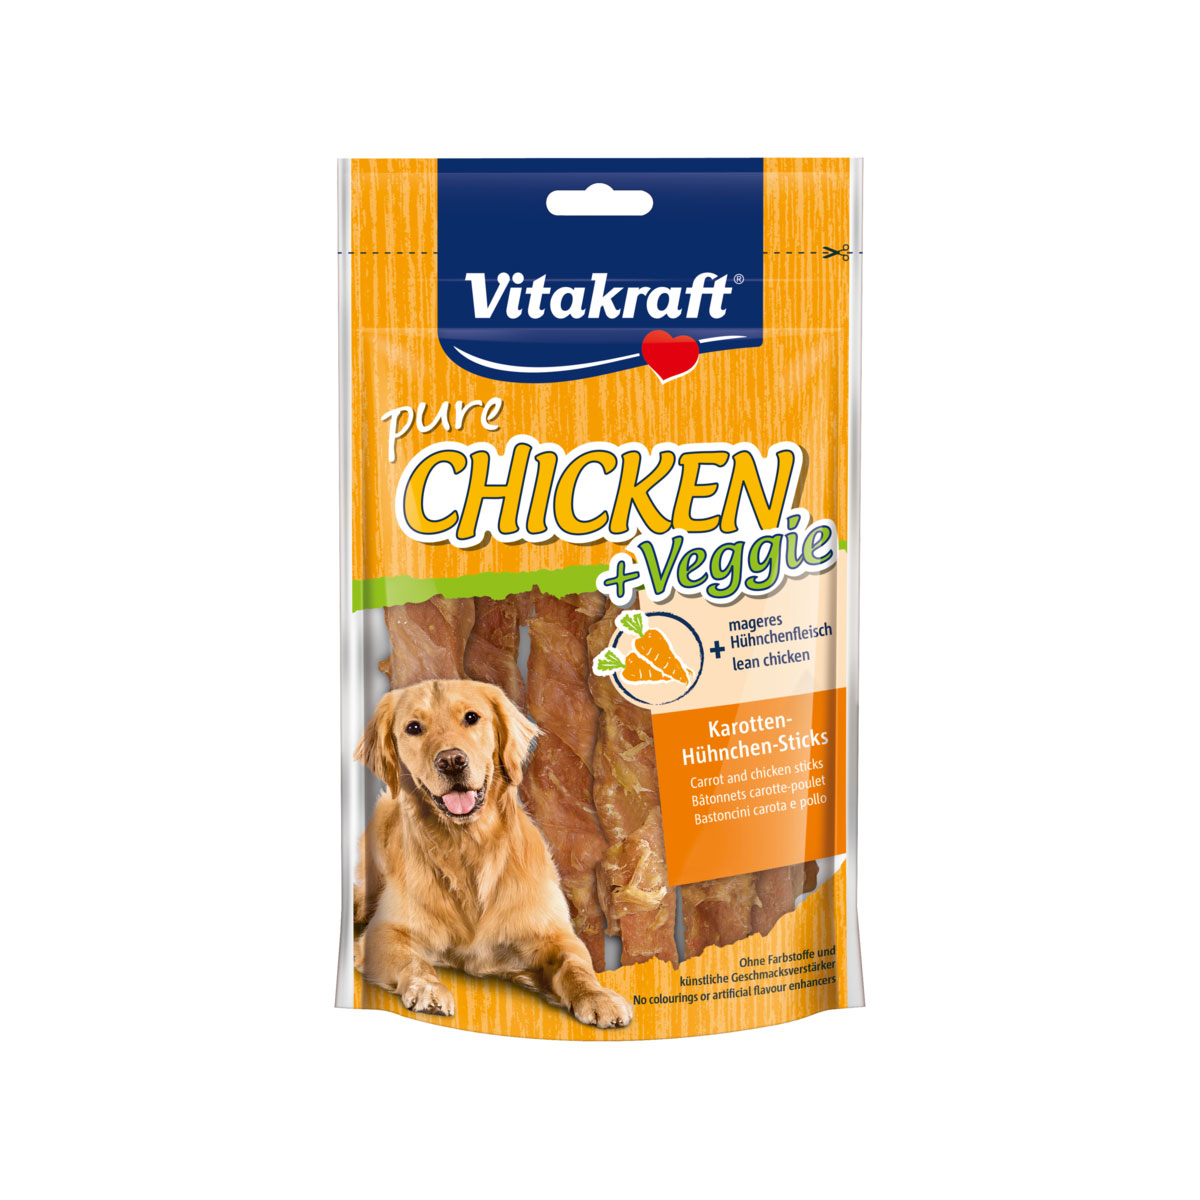 Chicken „Veggie“, Karotten + Huhn, 80 g